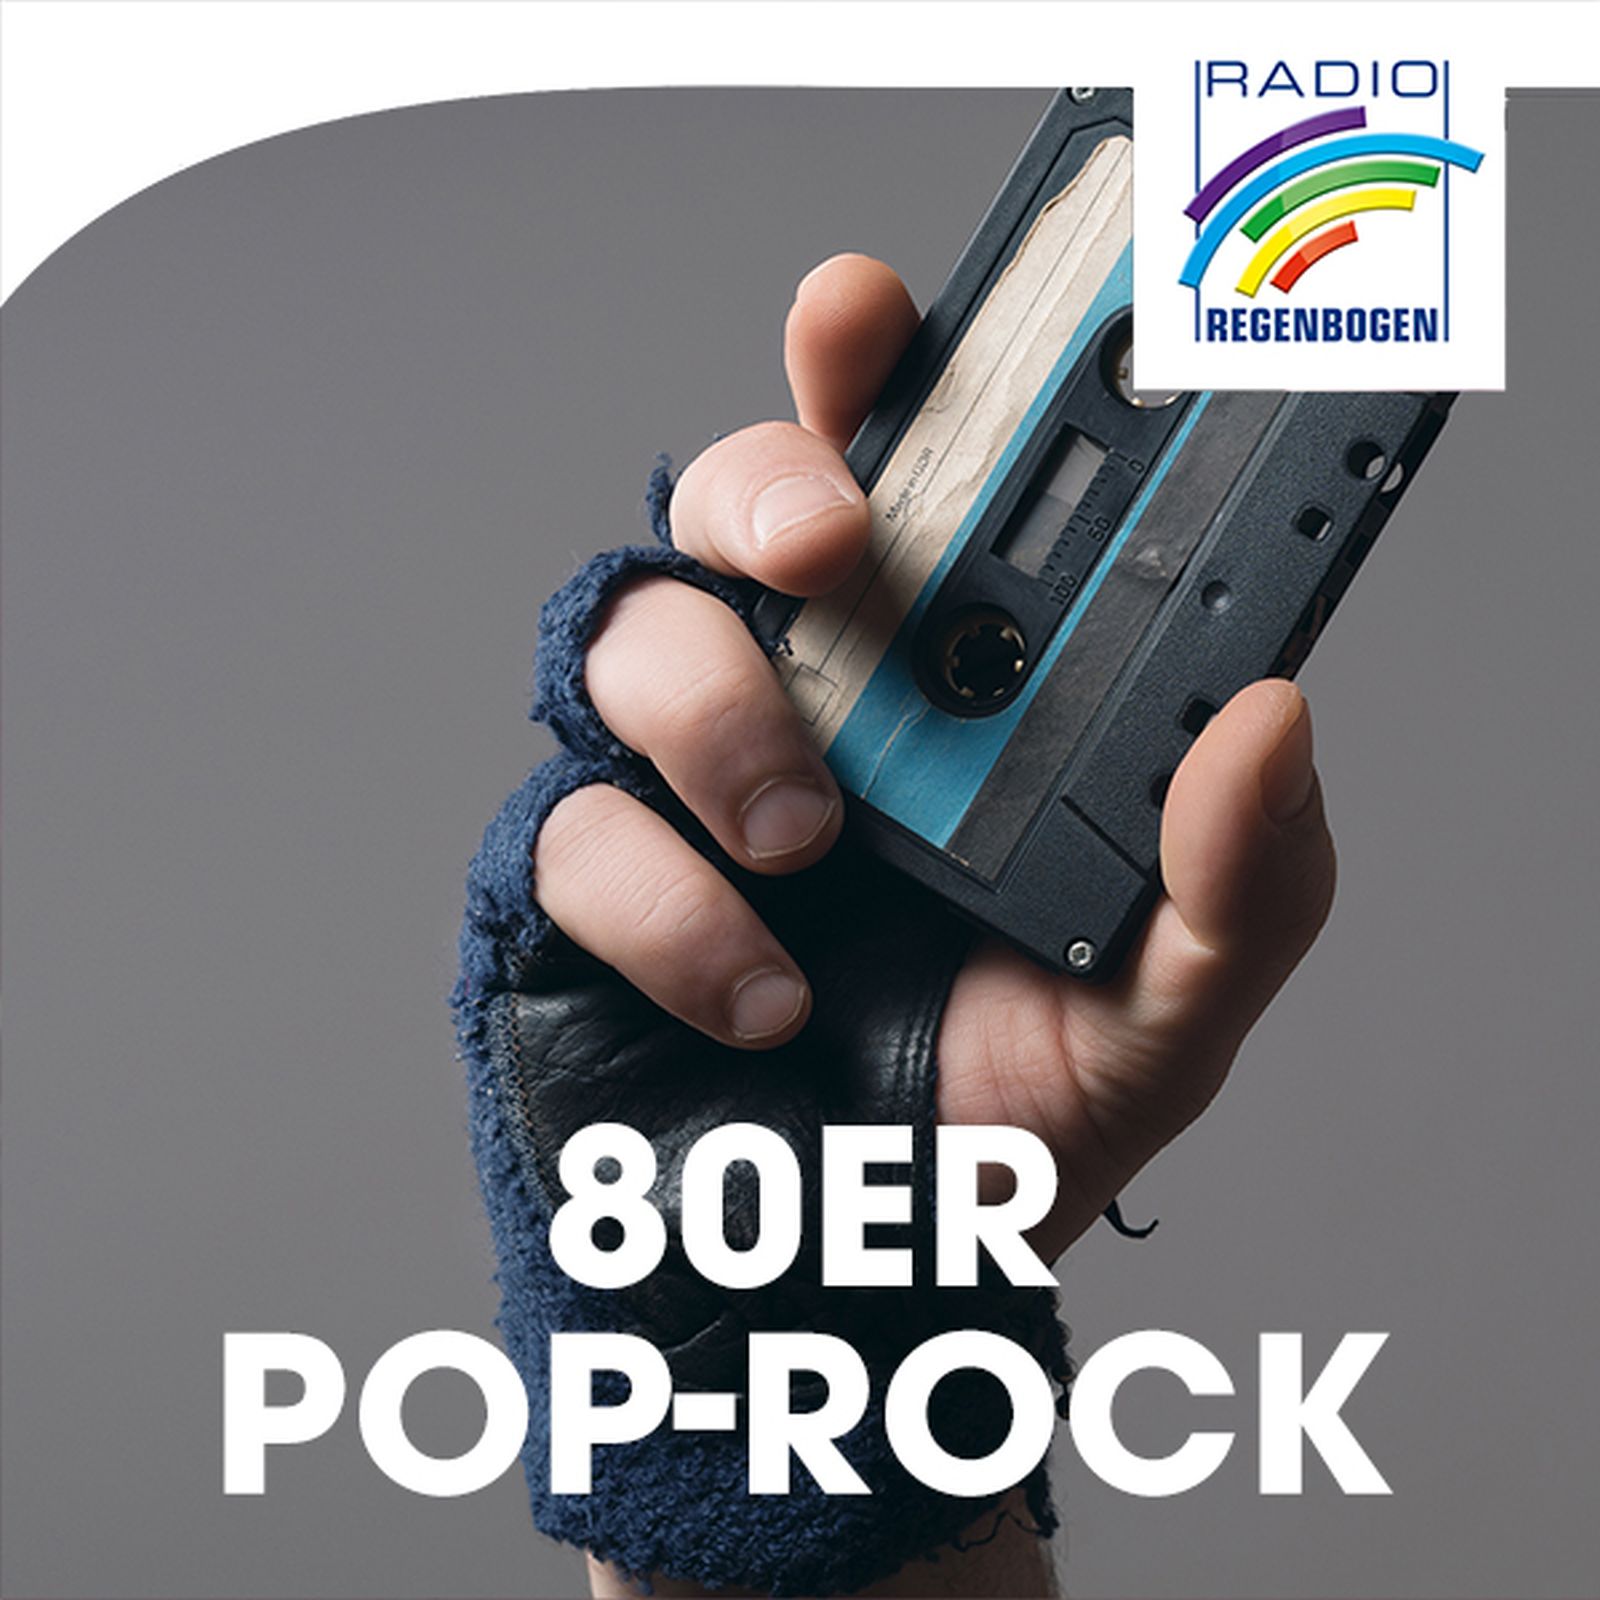 Radio Regenbogen - 80er Pop-Rock